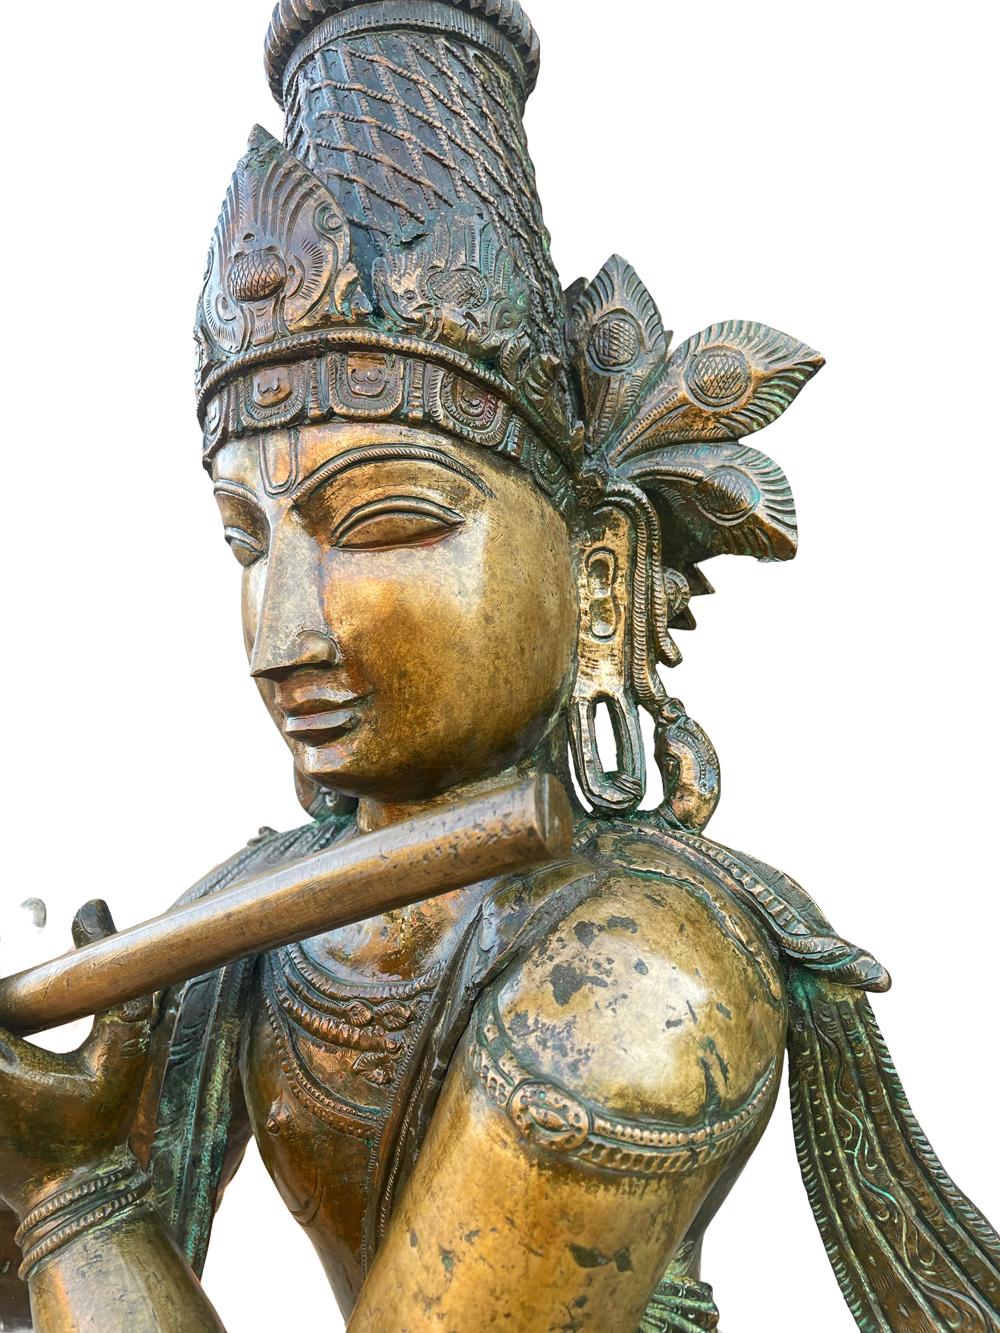 Diese Statue ist über einen Meter hoch und besteht aus schwerem Bronzeguss. Asiatischer Ursprung aus dem späten 19. Jahrhundert. Schöne warme Gesamtpatina.